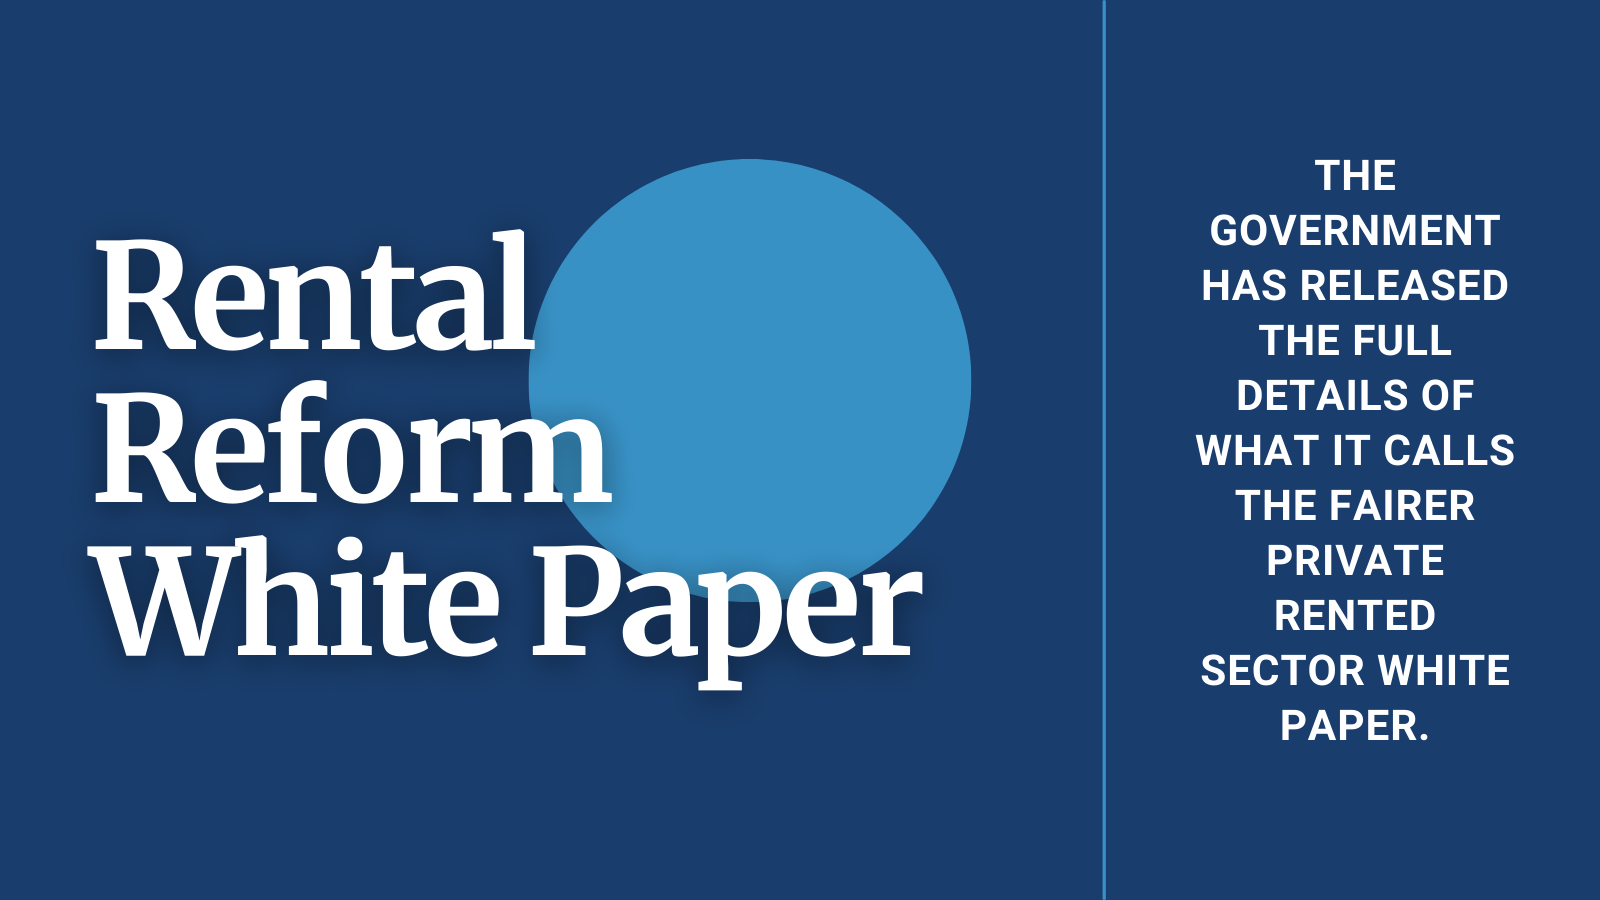 Rental Reform White Paper - full details here